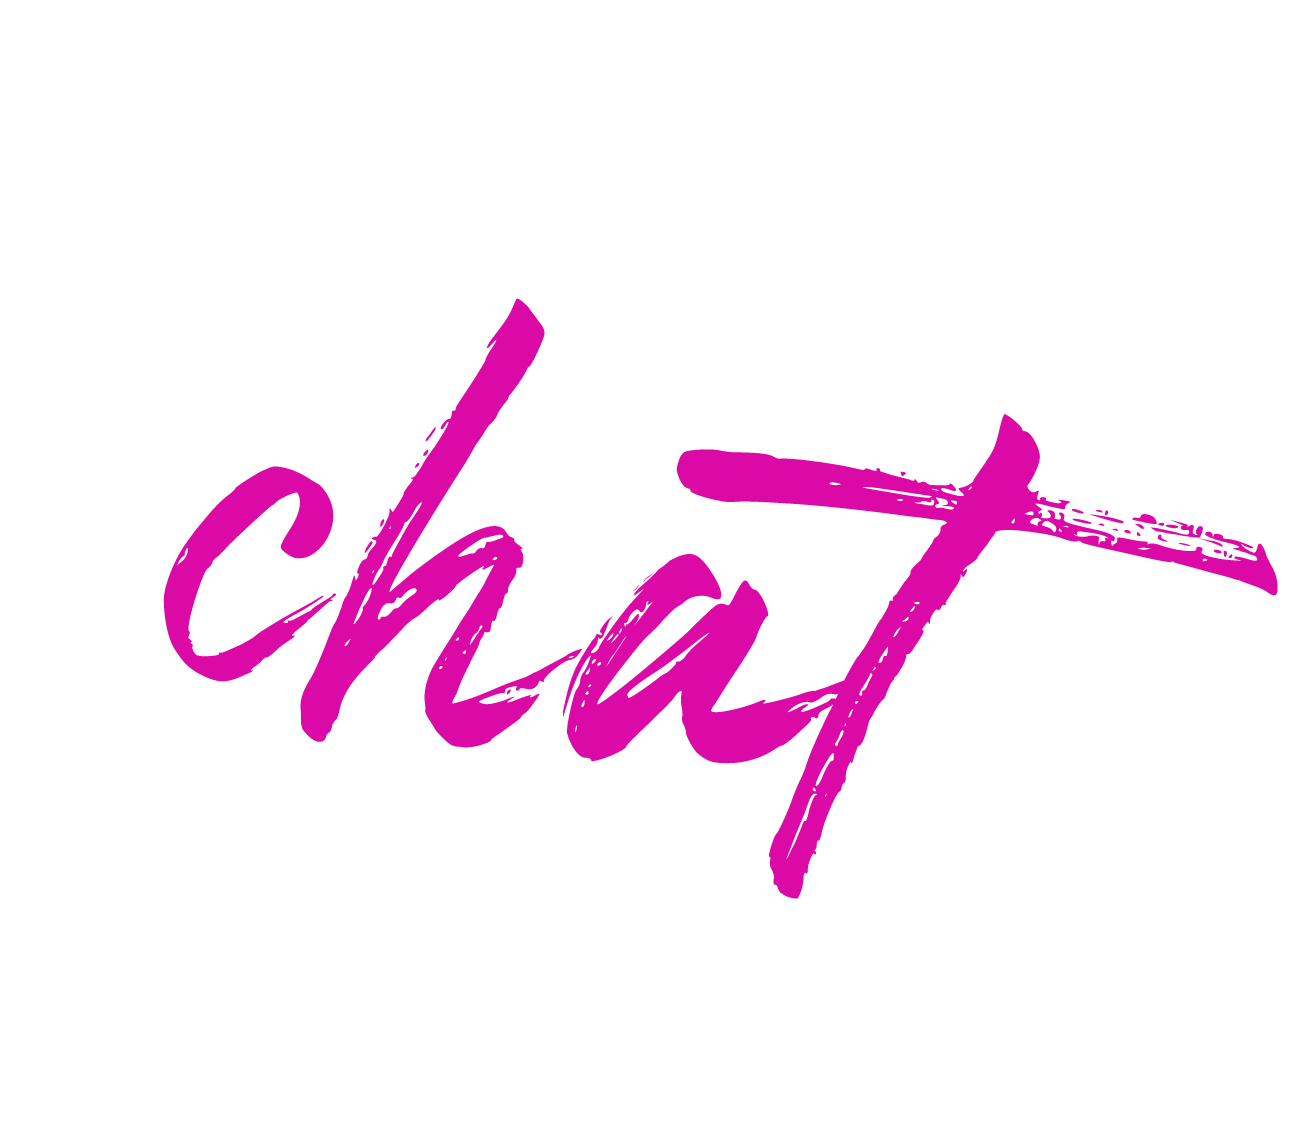 Vipchatgirls.com site for girls